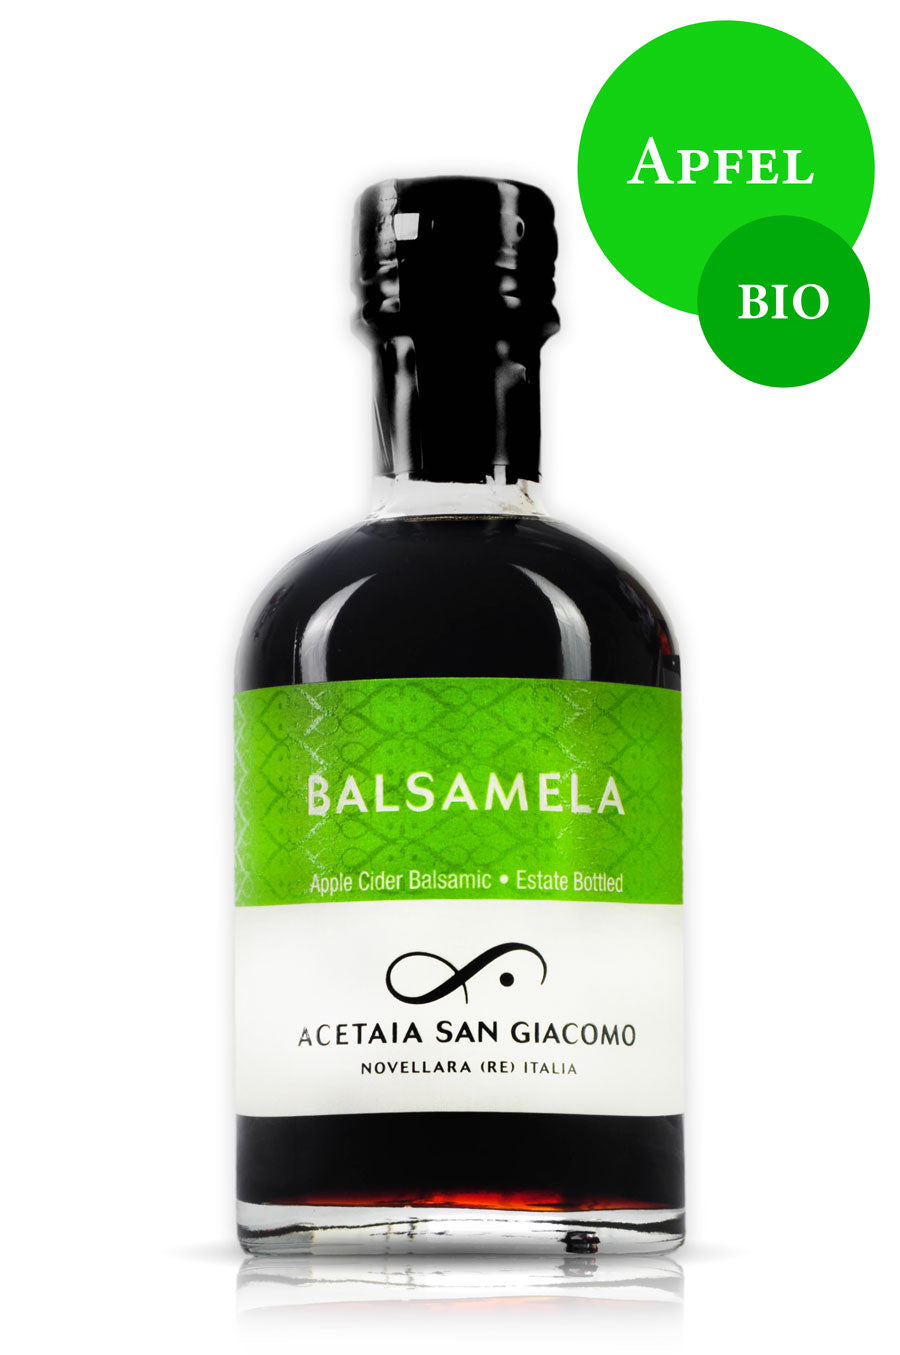 Balsamela Apfelessig online kaufen bio